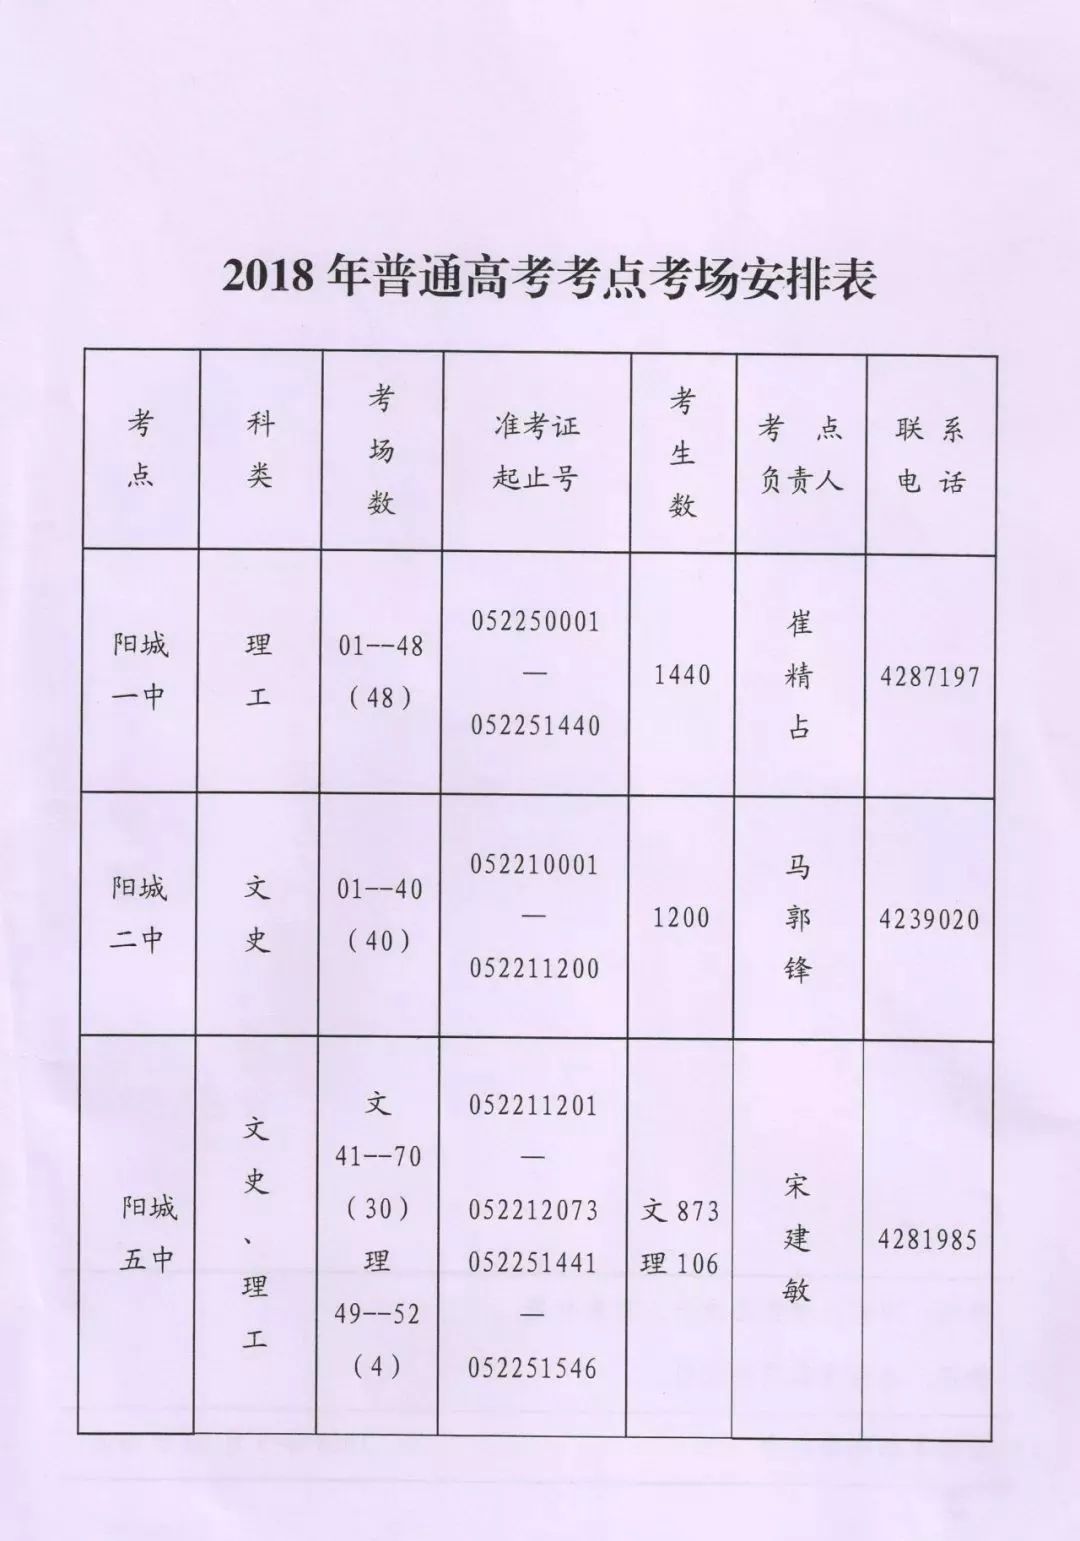 【扩散】阳城2018年高考考点考场安排表!